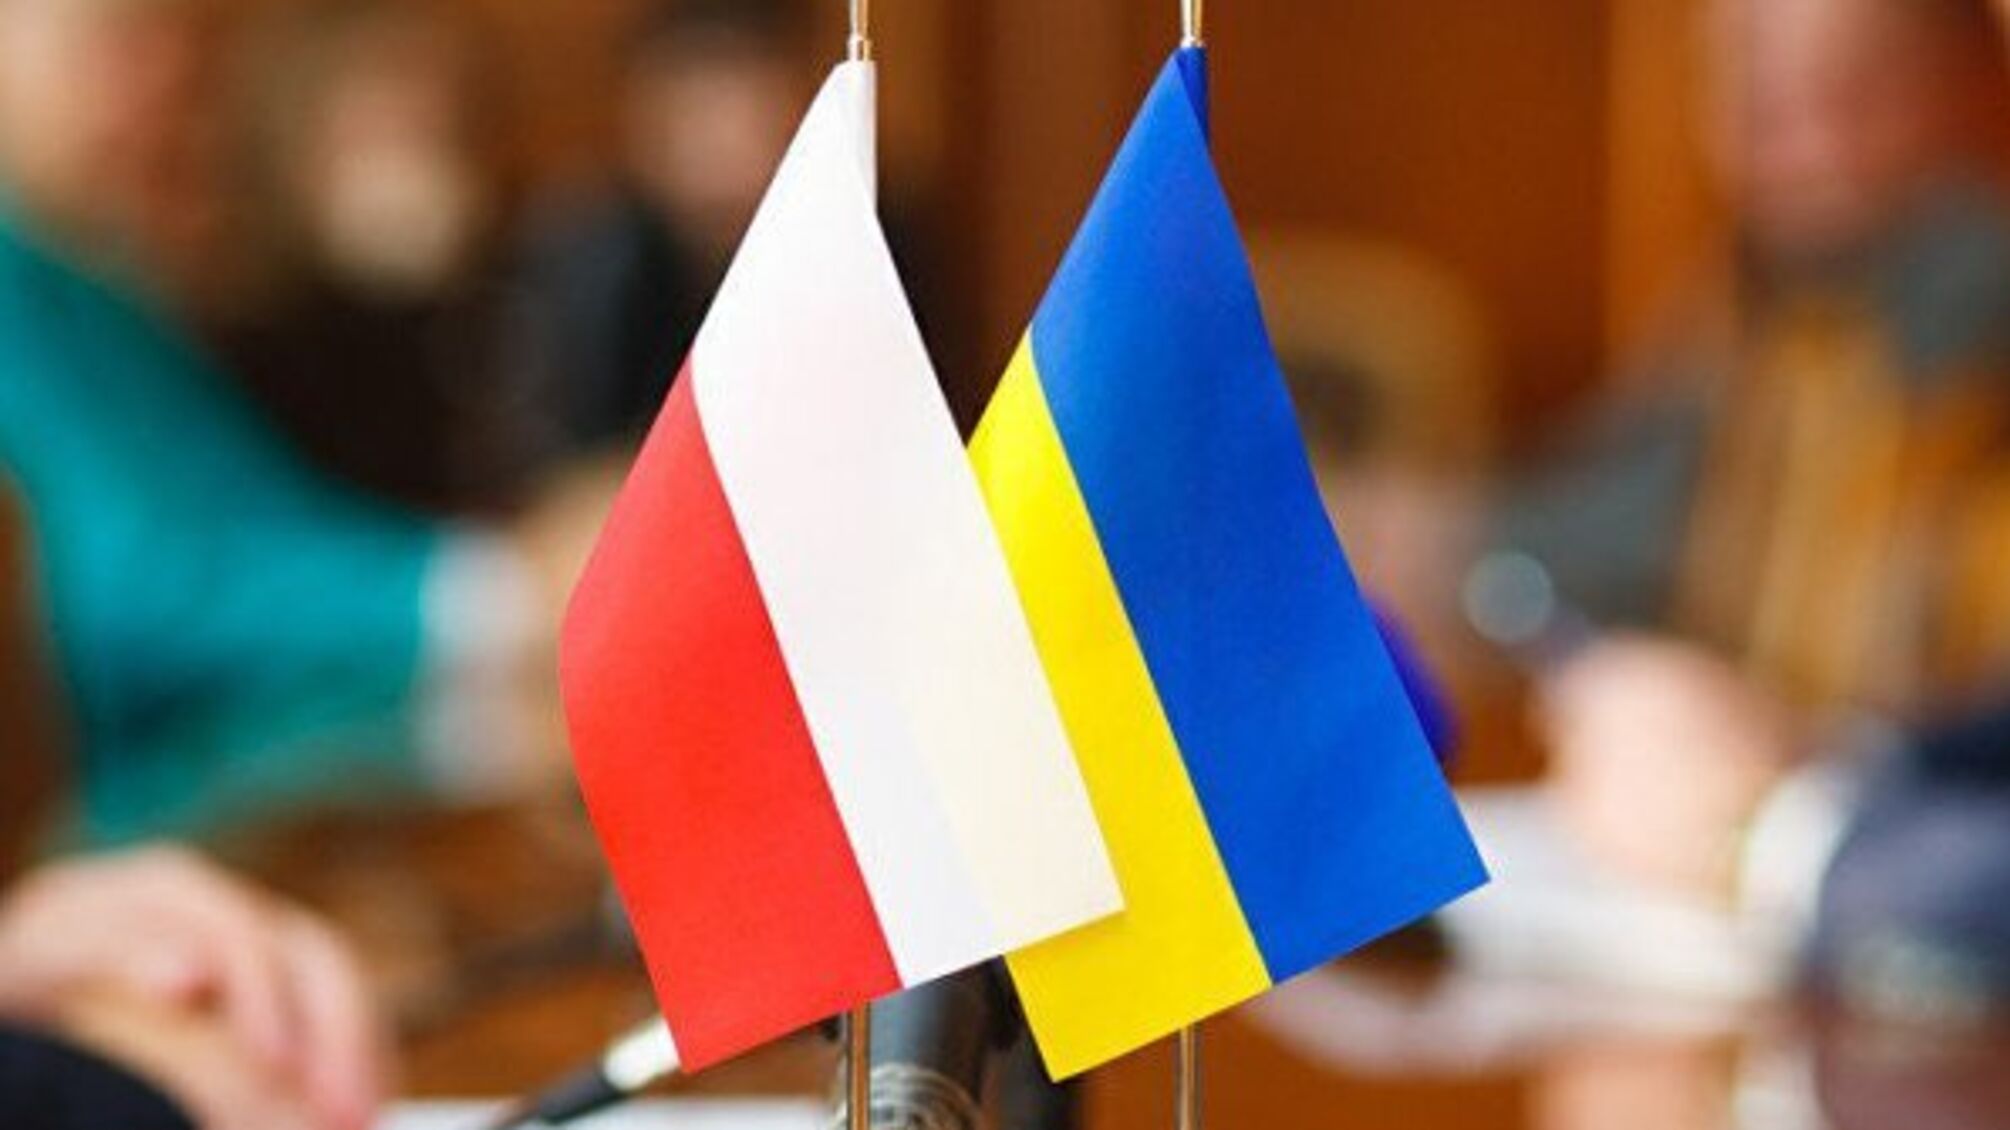 Польща виступила ініціатором зустрічі дипломатів щодо ситуації в Україні